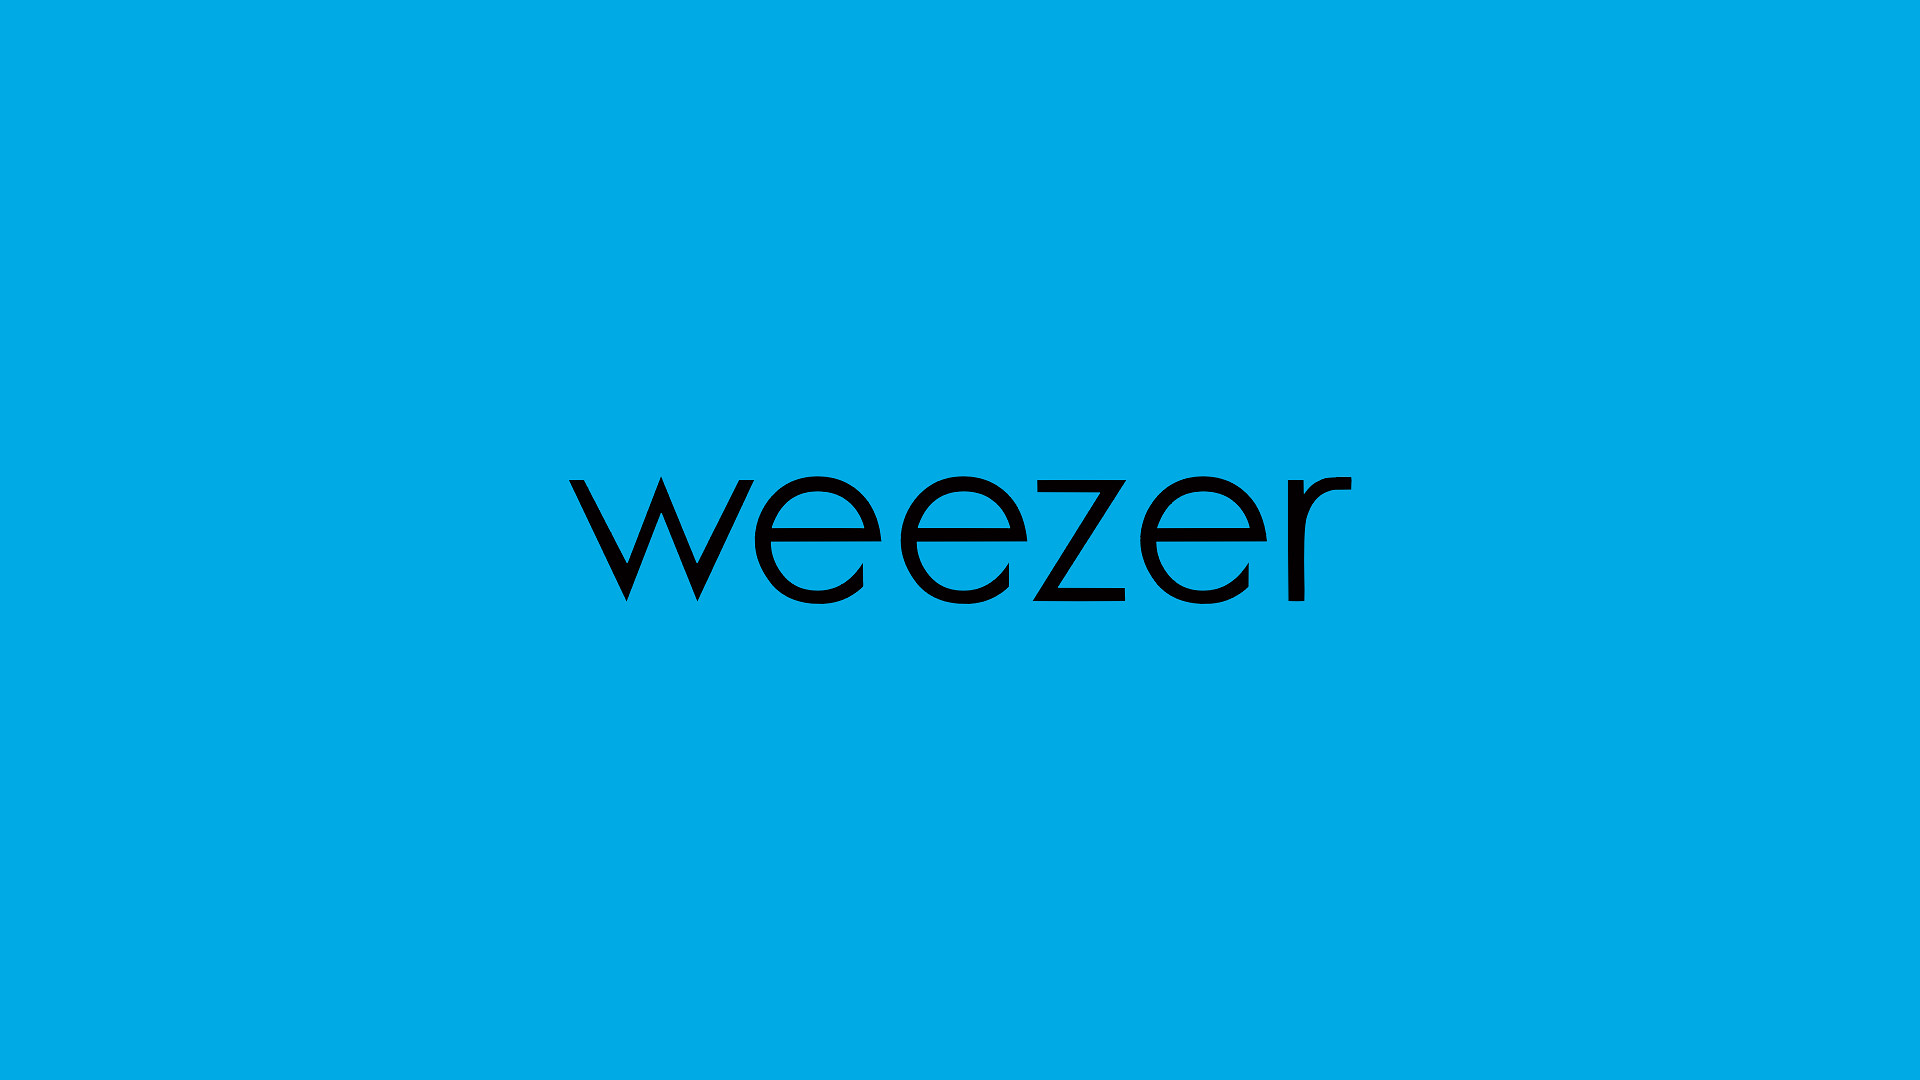 Weezer Wallpaper Pictures